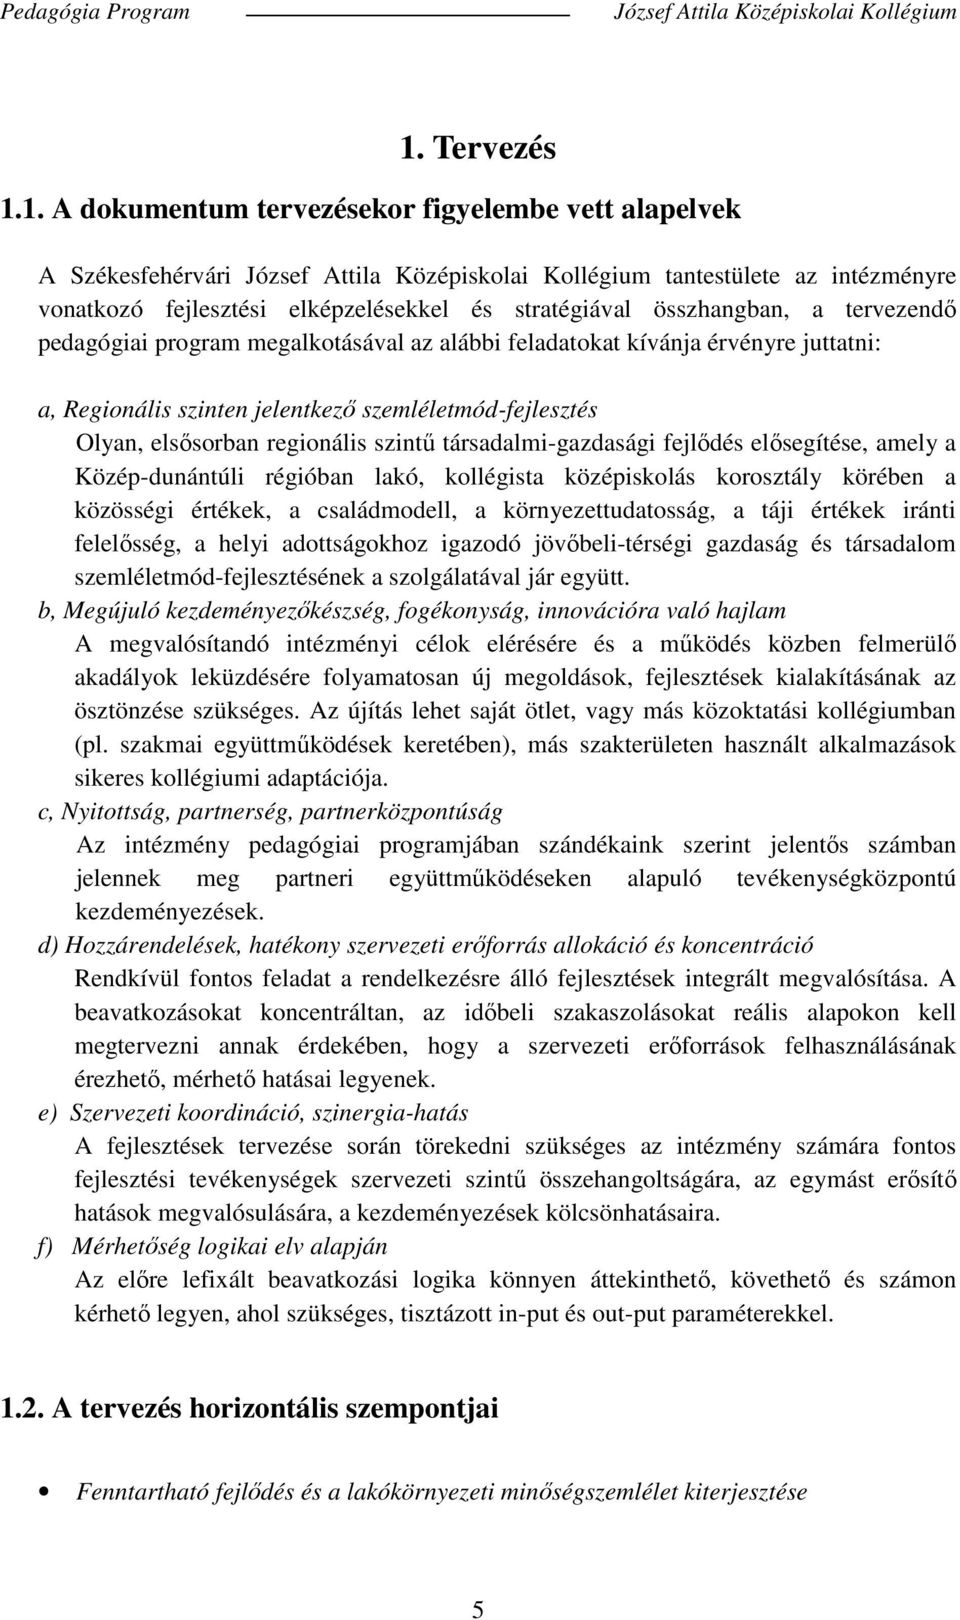 1. A dokumentum tervezésekor figyelembe vett alapelvek A Székesfehérvári József Attila Középiskolai Kollégium tantestülete az intézményre vonatkozó fejlesztési elképzelésekkel és stratégiával